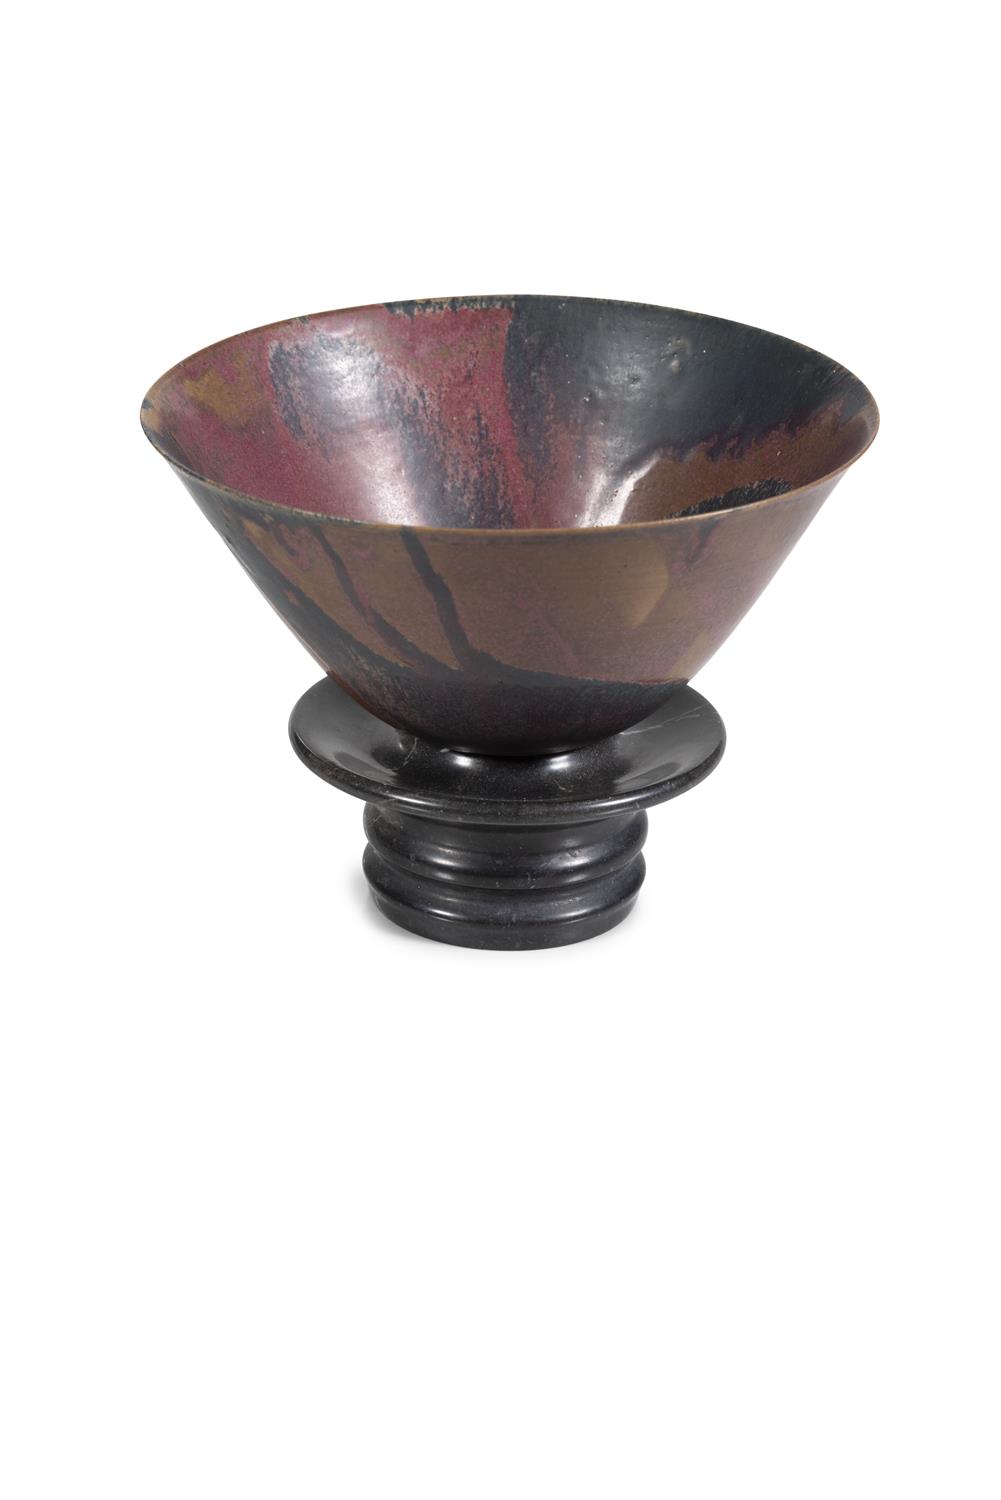 SONJA LANDWEER (1933-2019) Ceramic, 12 x 23cm(h) - Image 2 of 3